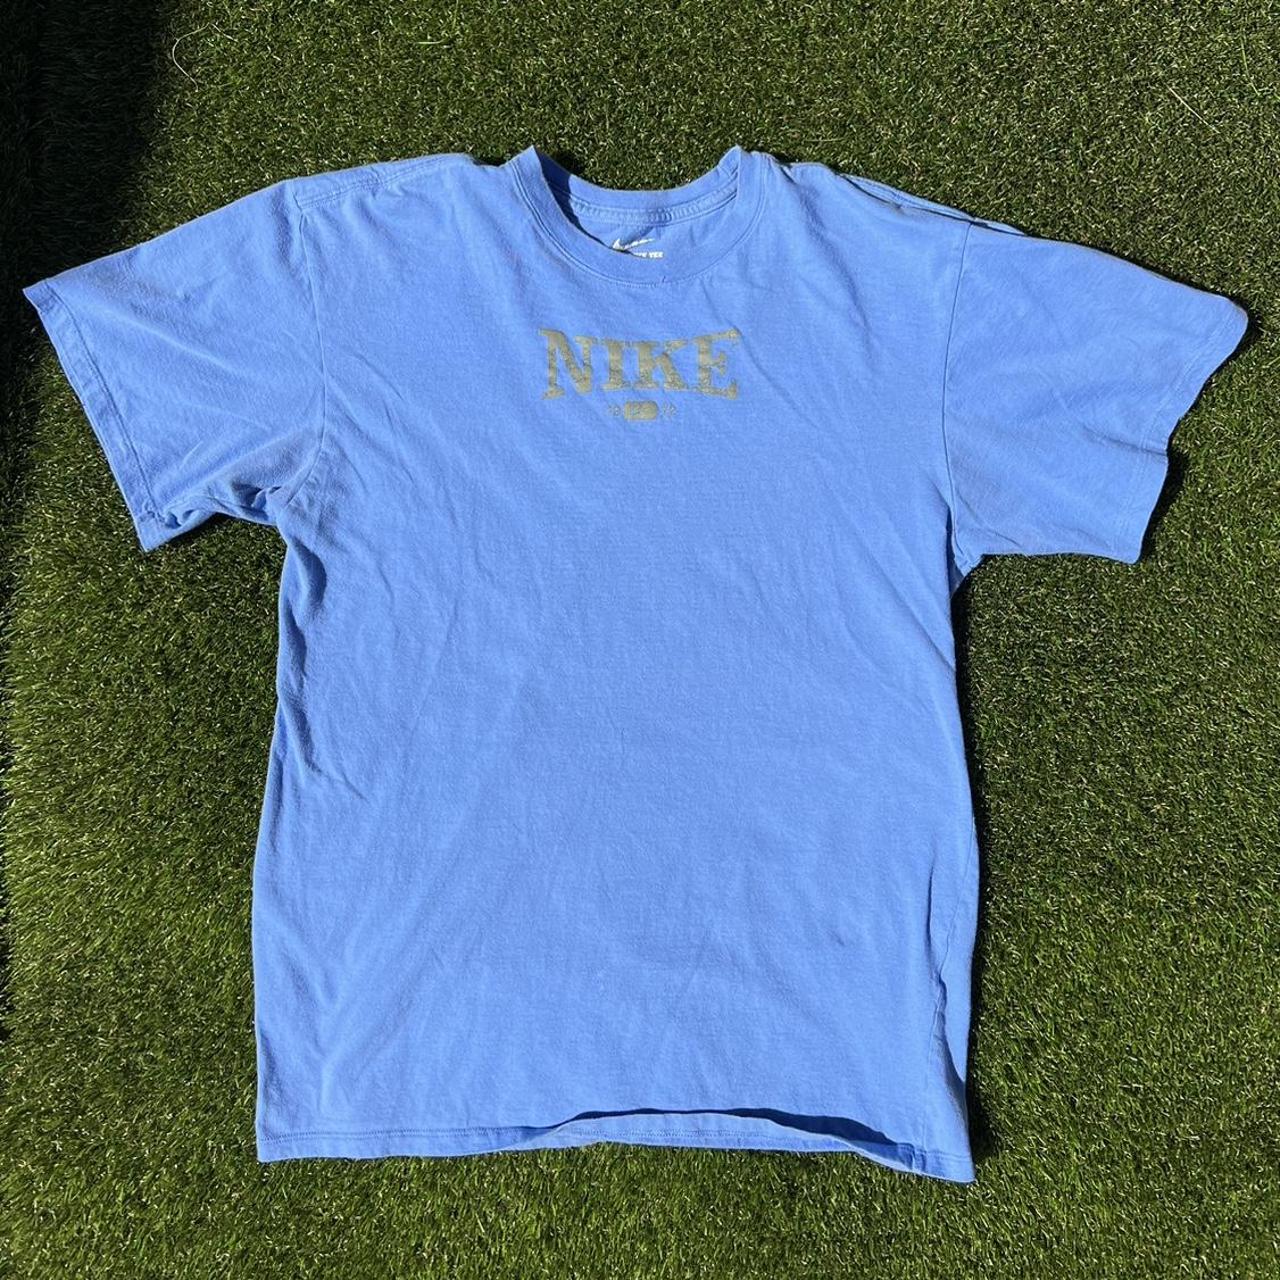 Vintage Nike T-Shirt / S (TTS / Vintage / Light Blue... - Depop